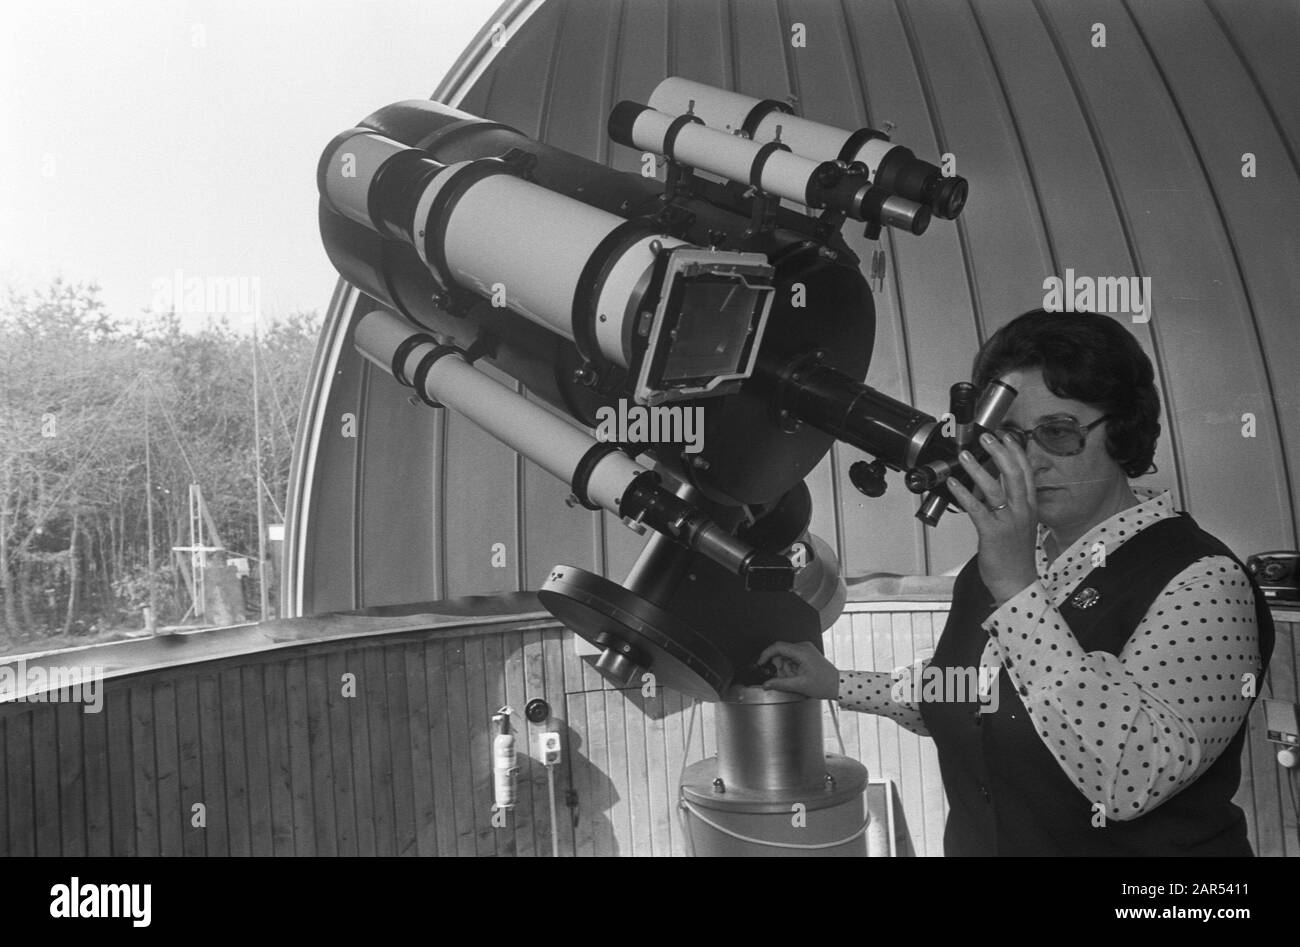 Das größte Radioteleskop Europas in Hoeven wird am 18. Mai in Betrieb  genommen; Frau Vermeesch am Teleskop Datum: 3. April 1974 Ort: Hufe  Stichwörter: Teleskope Name: Simon Stevin Volkssterrenwacht Stockfotografie  - Alamy